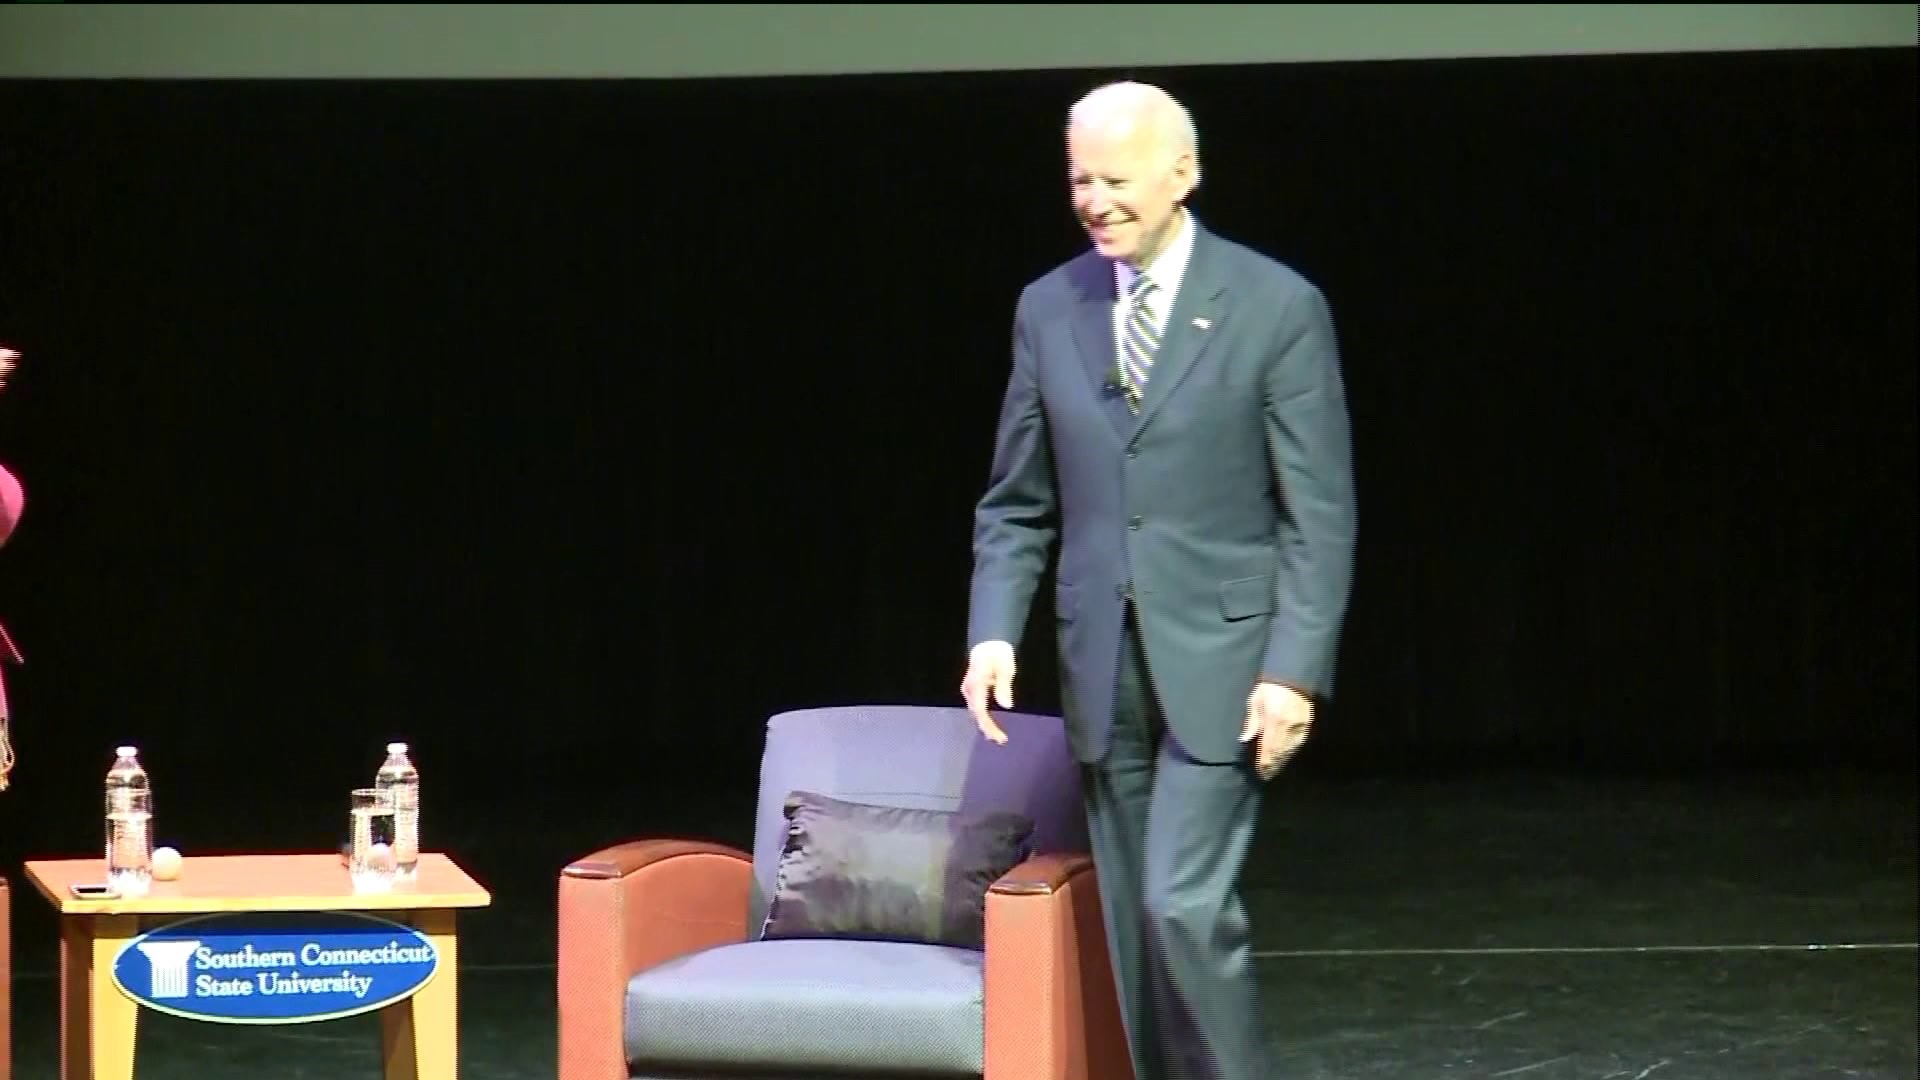 Biden speaks at SCSU